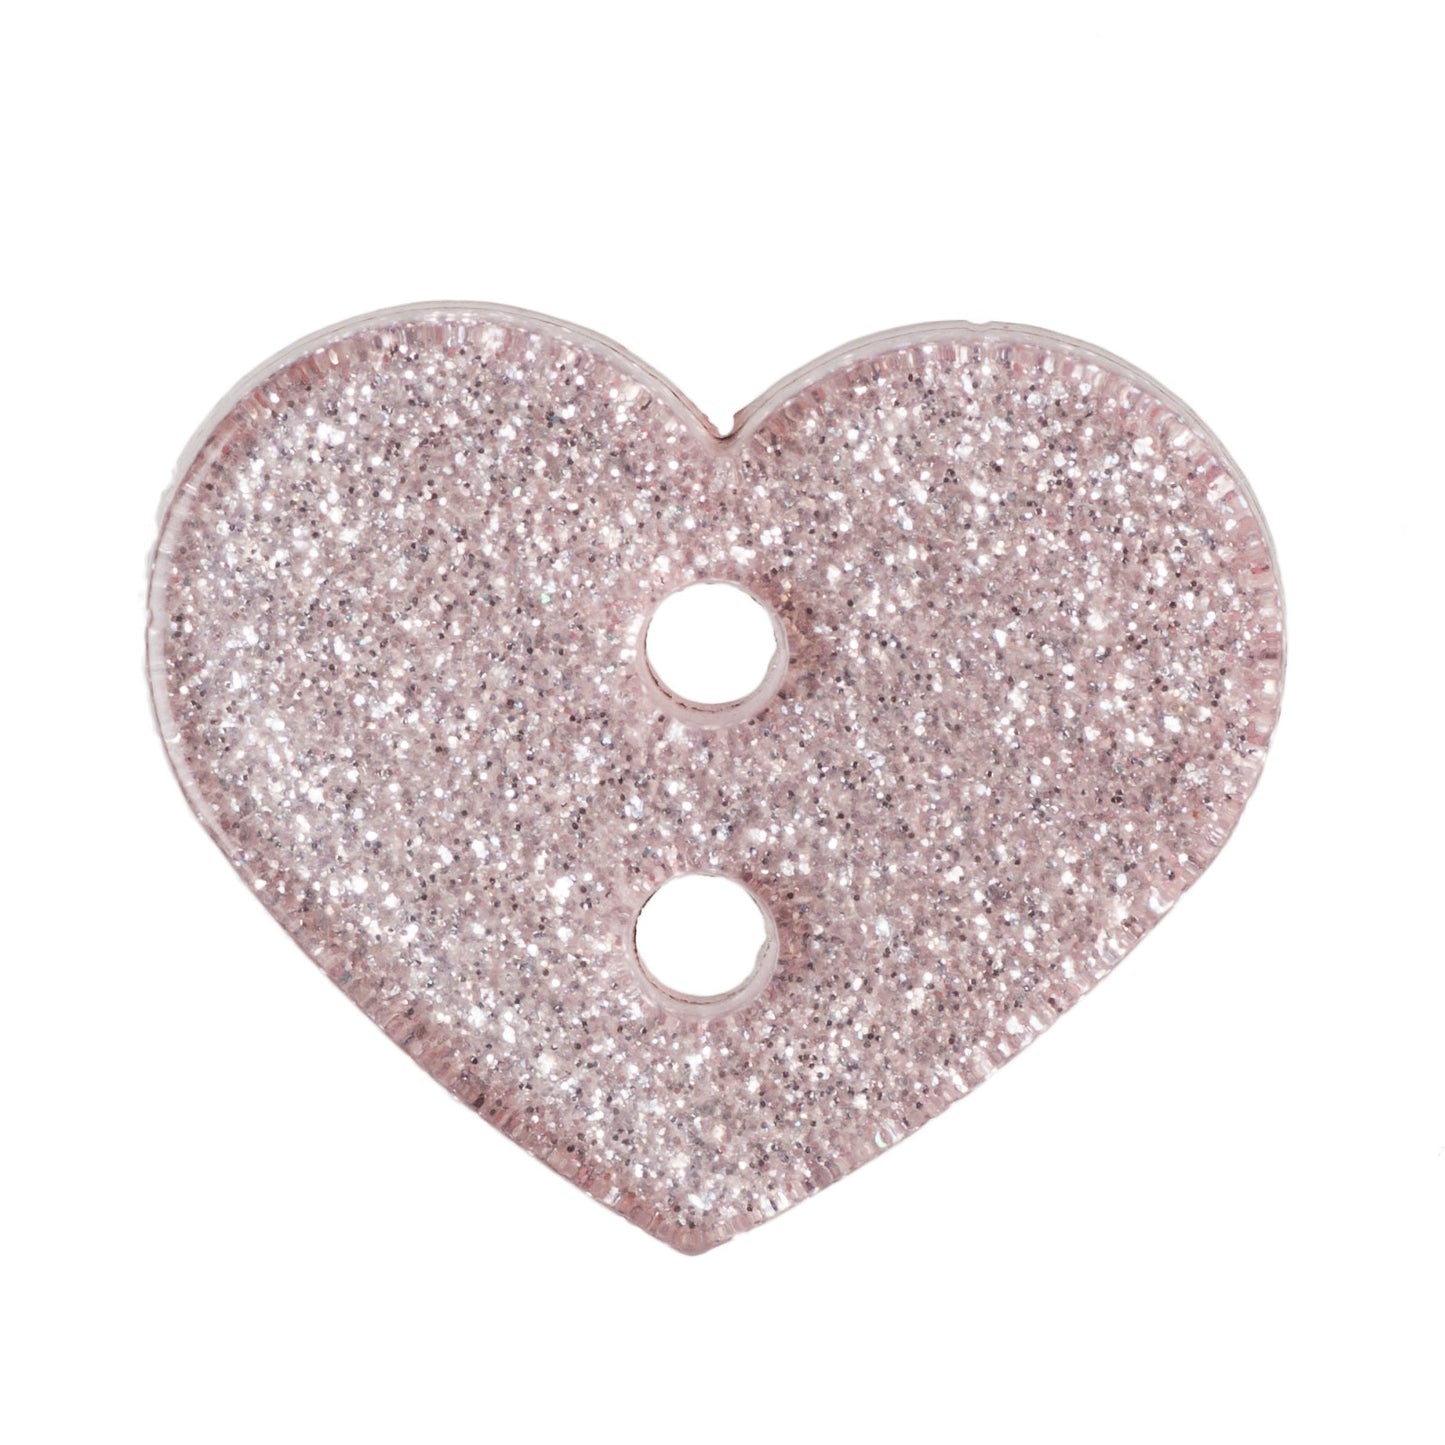 2 Hole Glitter Love Heart Button - 18mm - Light Pink